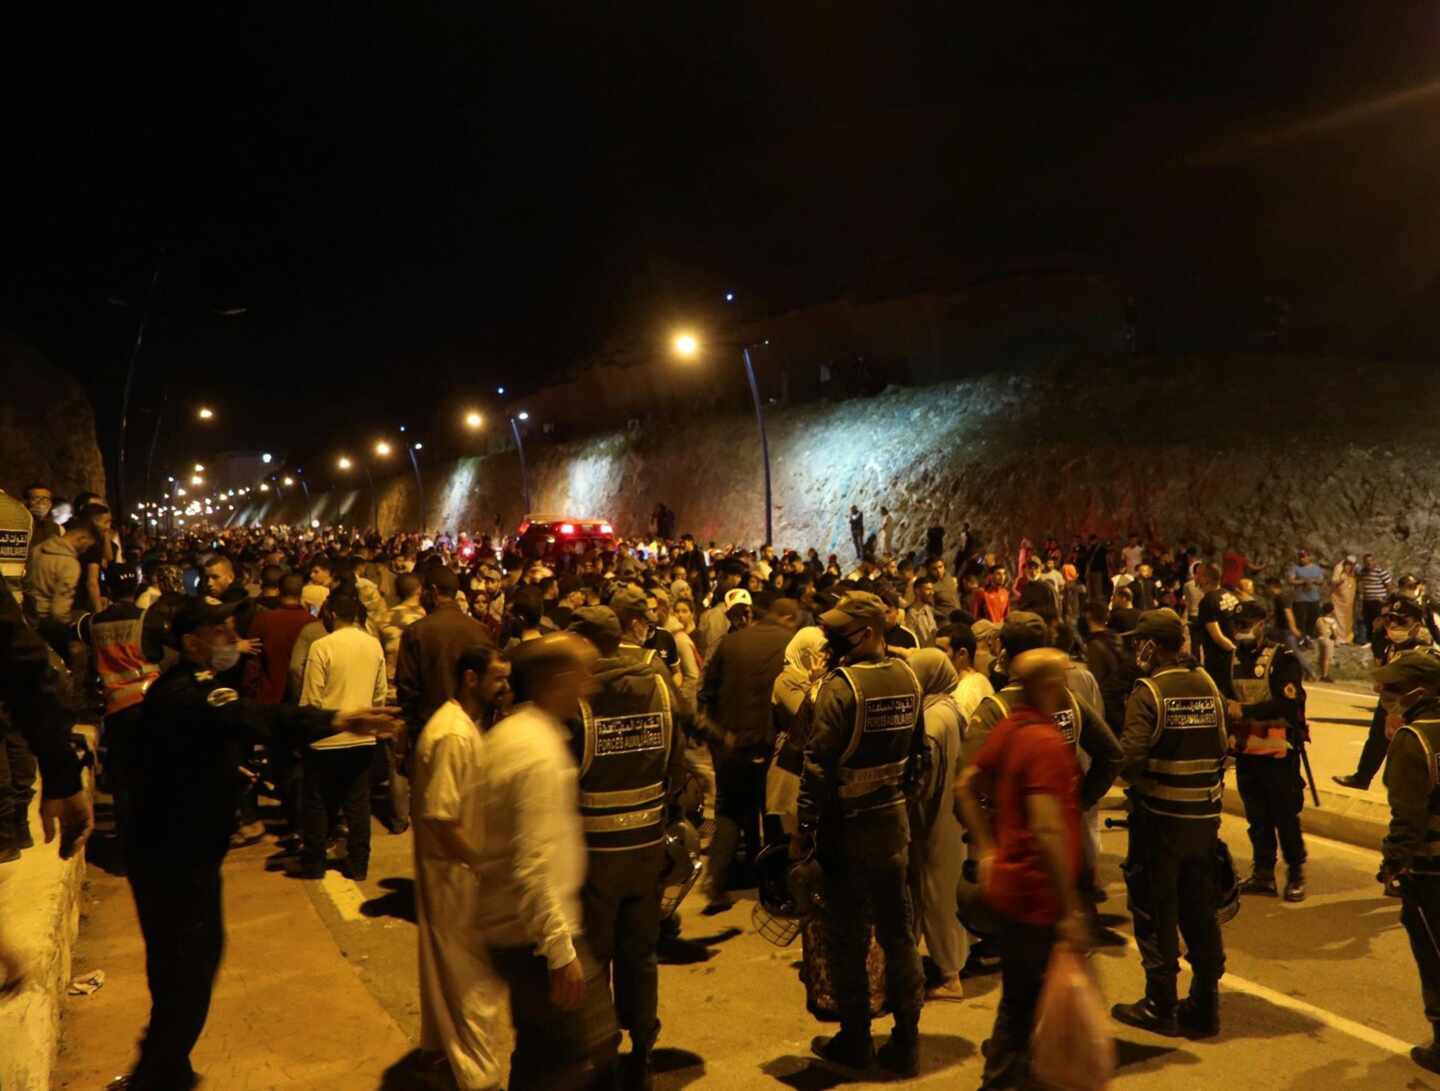 Jóvenes marroquíes esperan el momento de cruzar la frontera, por tierra o agua, este lunes en la localidad de Castillejos